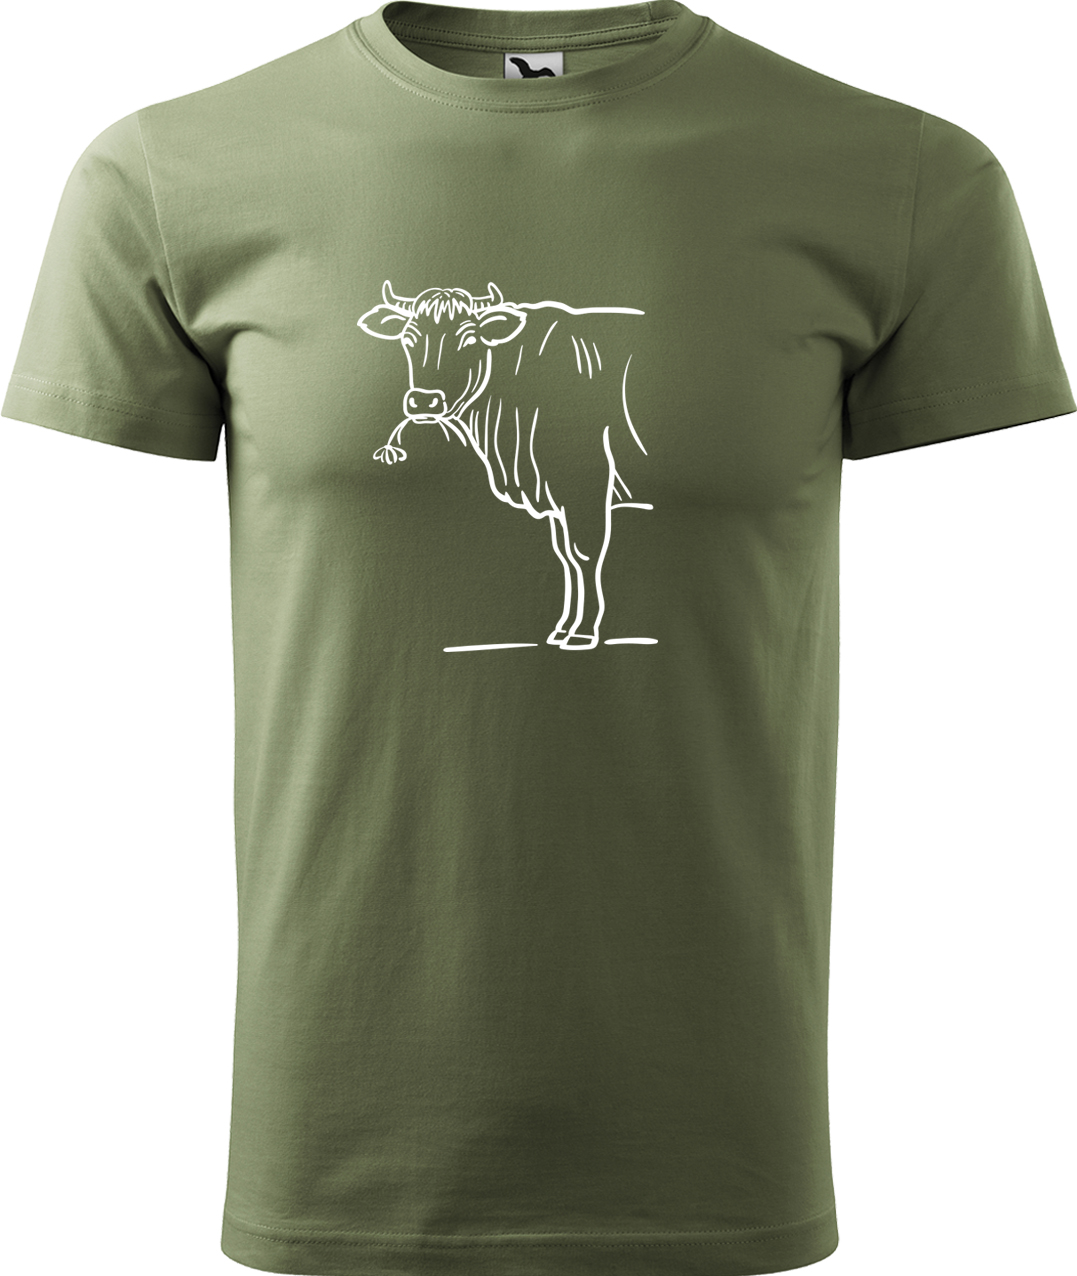 Pánské tričko s krávou - Býk Velikost: XL, Barva: Světlá khaki (28), Střih: pánský